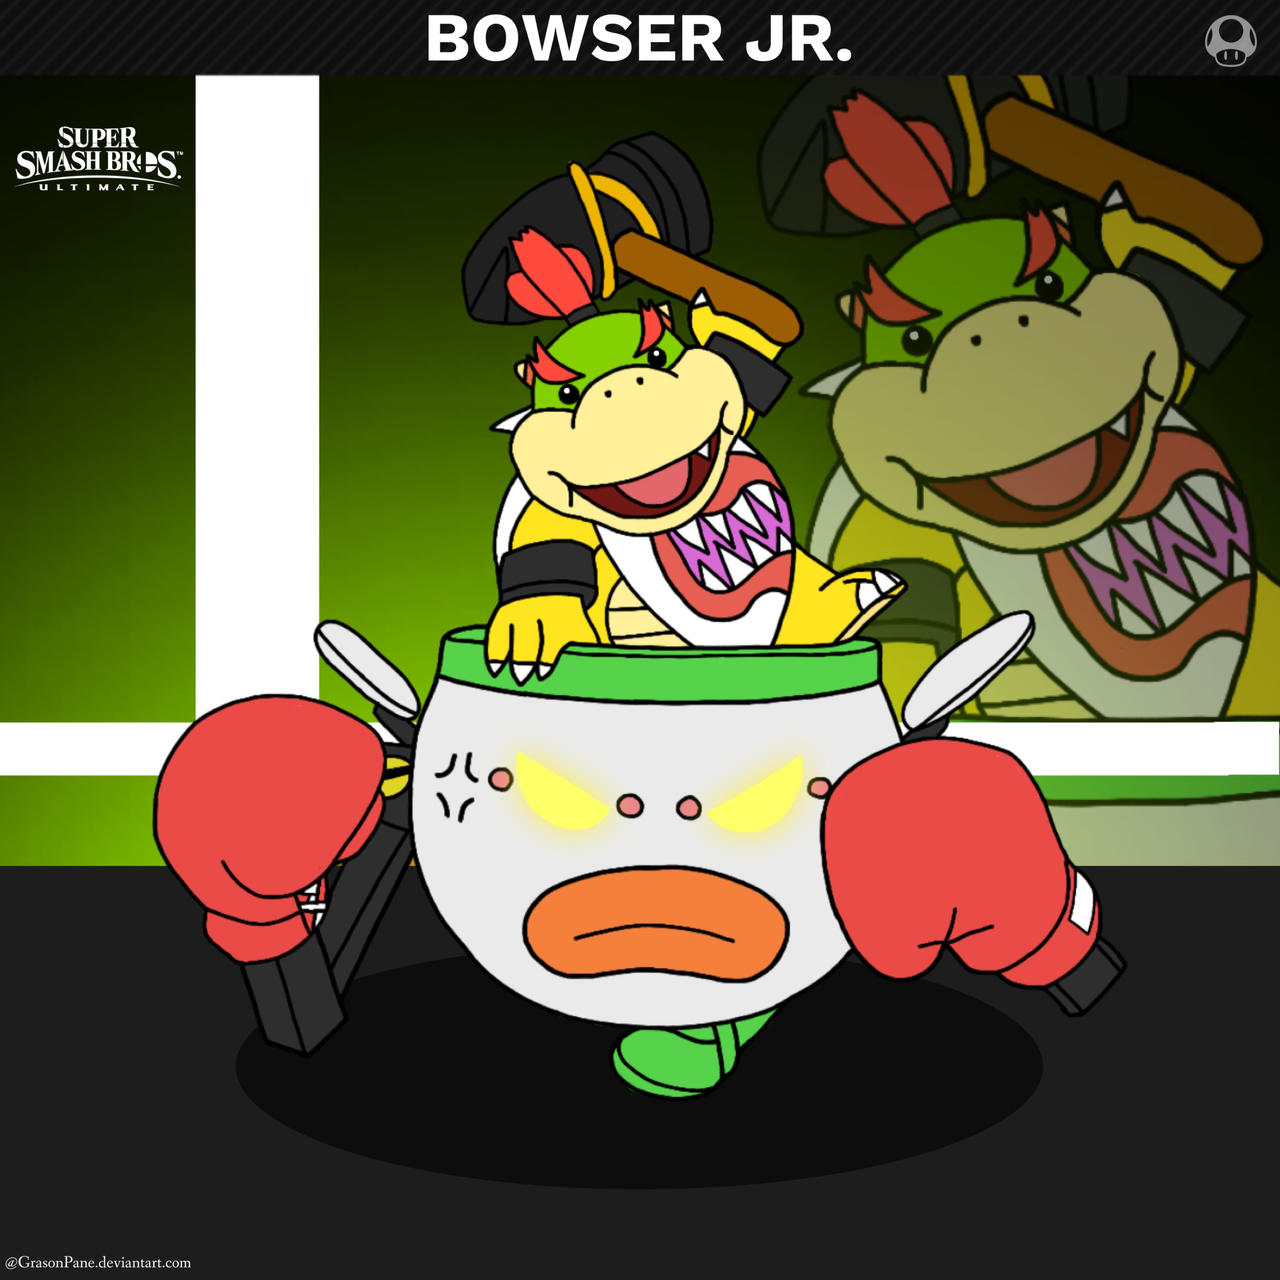 Bowser Jr - Ultimate by GameArtist1993 on DeviantArt